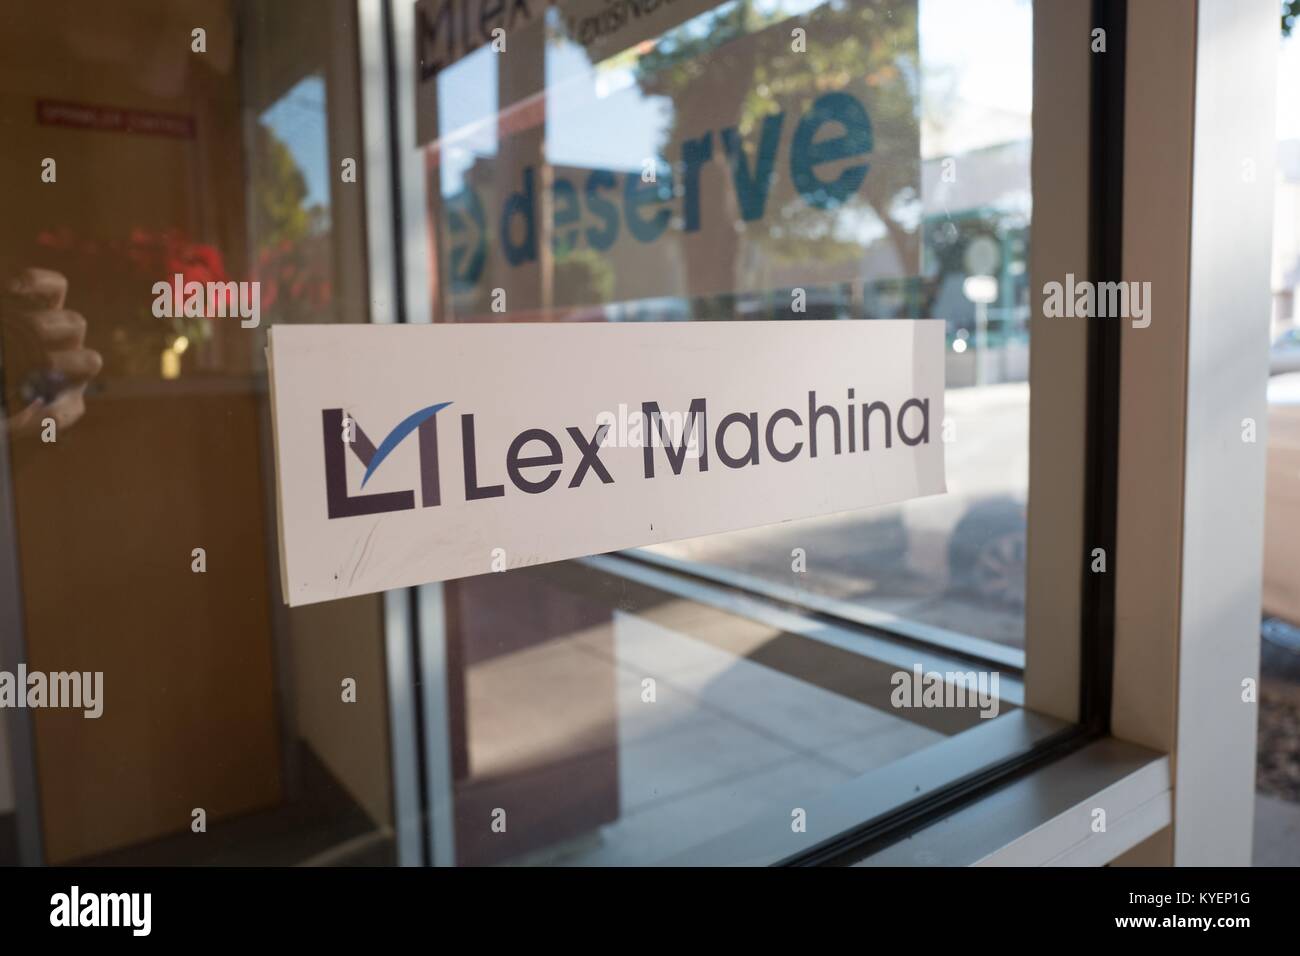 Signer avec logo au siège de l'analytique et l'apprentissage machine company Lex Machina, une division de Lexis Nexis, dans la Silicon Valley, Menlo Park, Californie, le 14 novembre 2017. () Banque D'Images